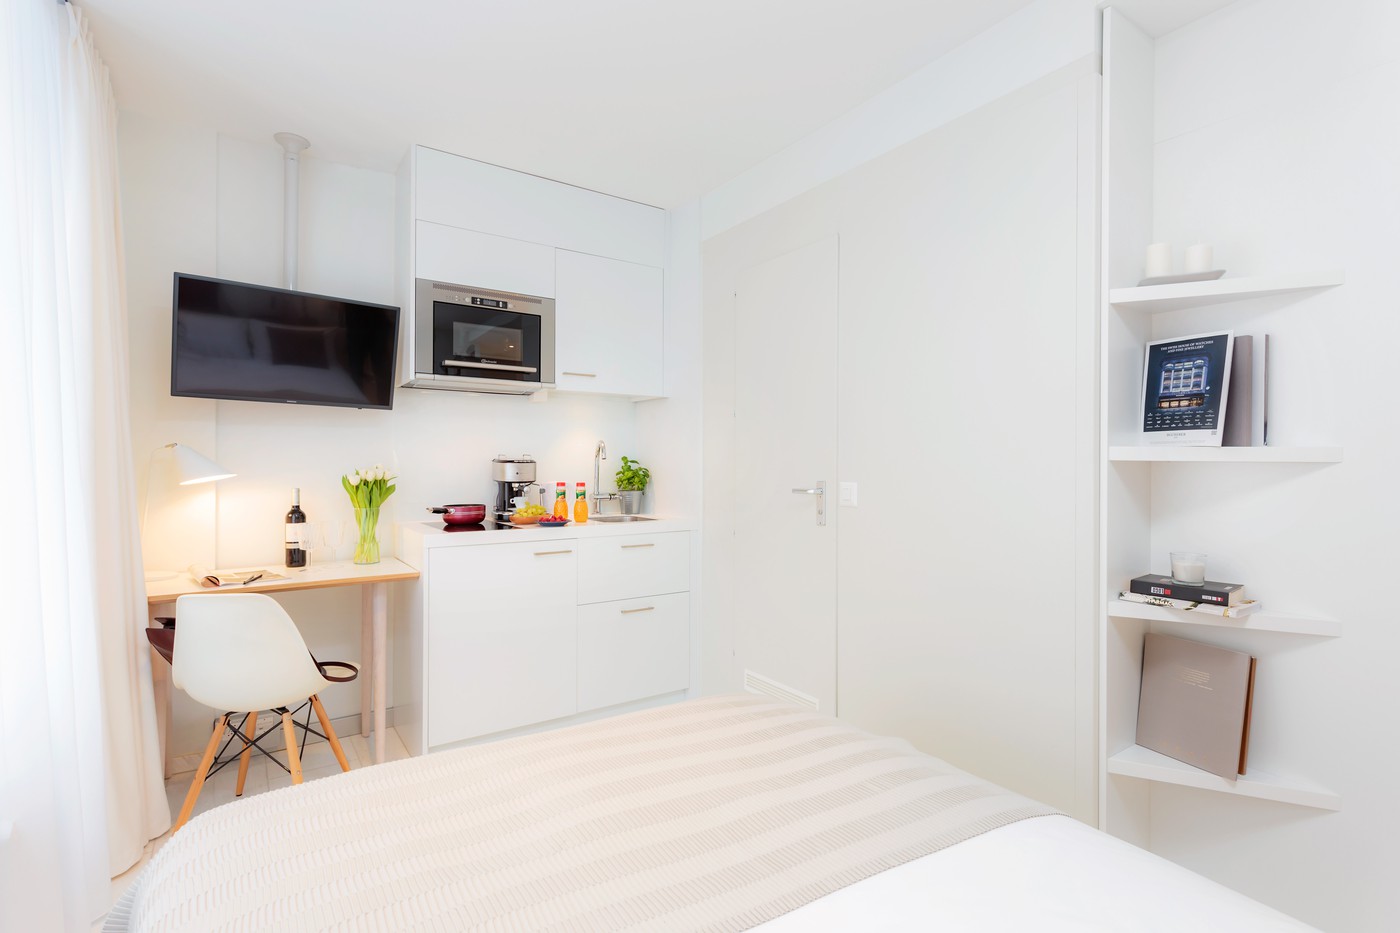 1 Zimmer-Möblierte Wohnung in Zug mieten - Flatfox